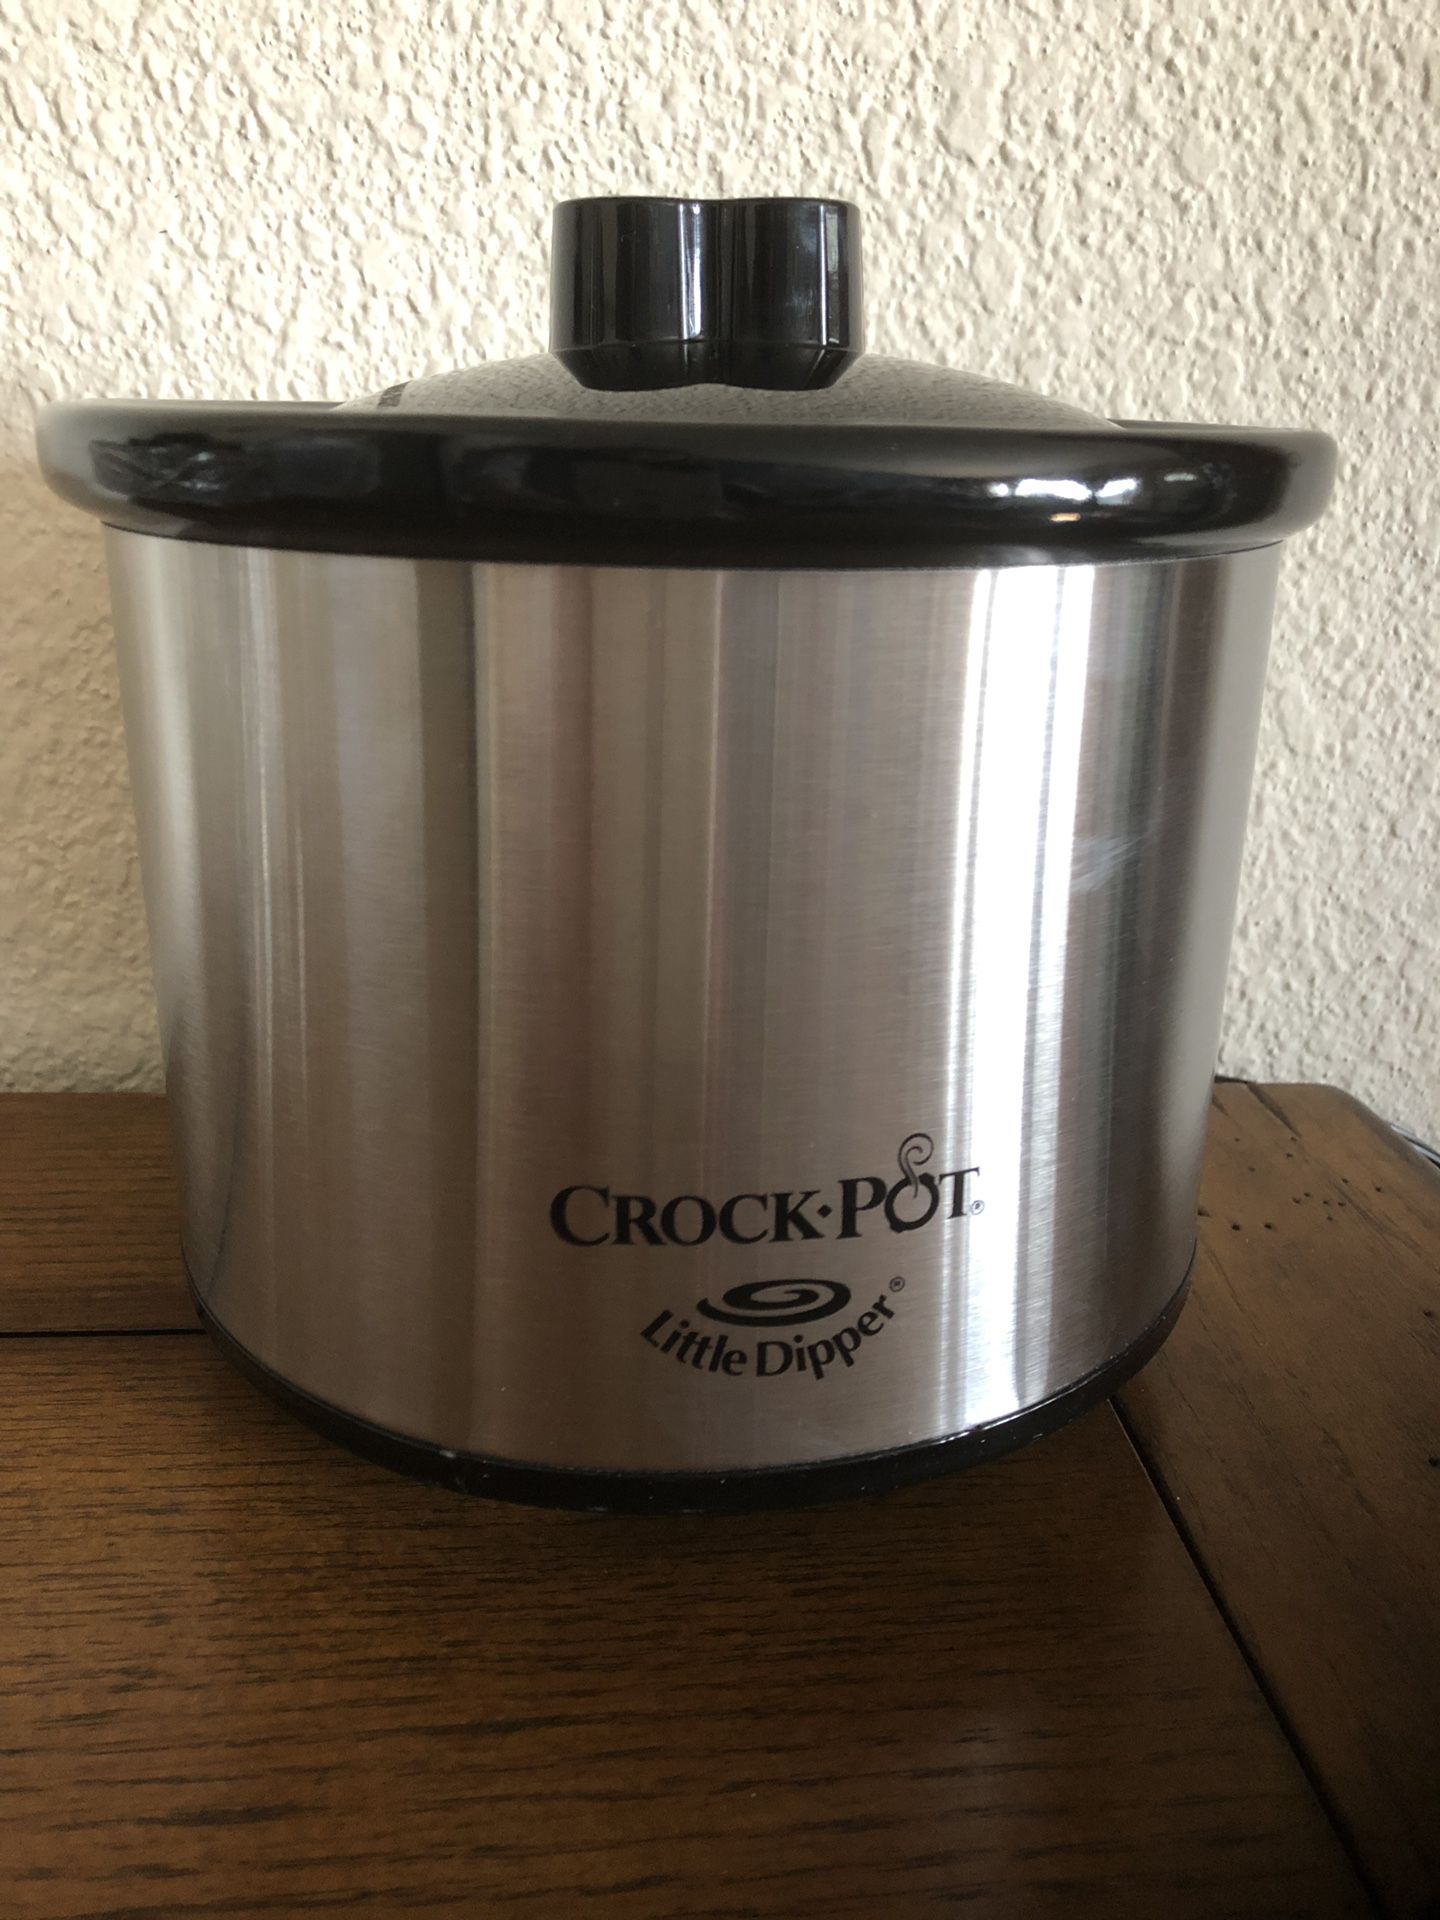 Crock Pot Little Dipper